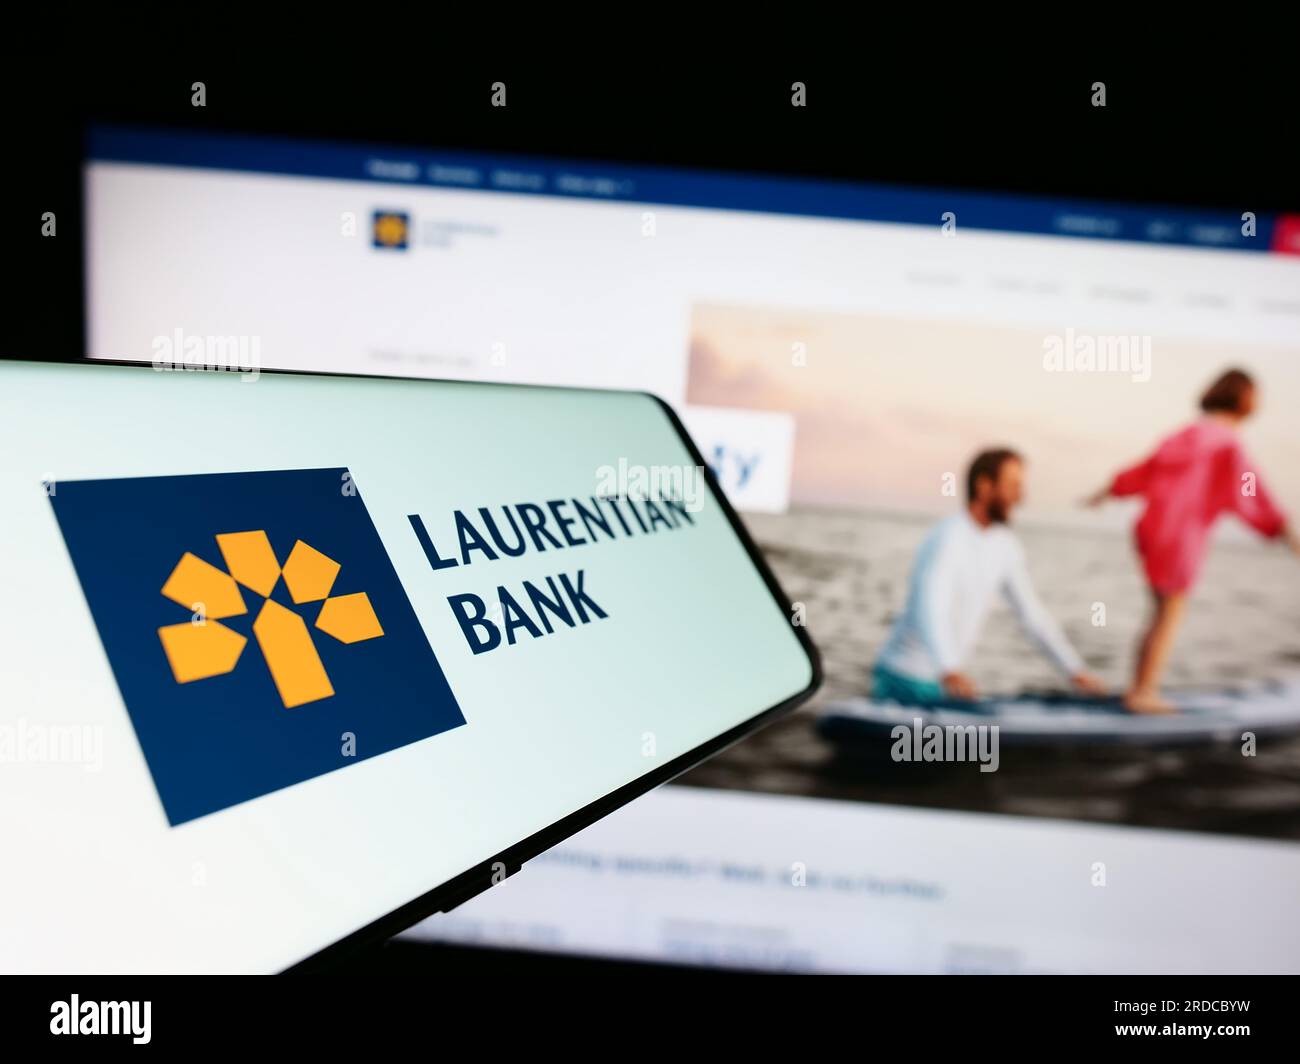 Cellulare con logo della società finanziaria Laurentian Bank of Canada (LBC) sullo schermo davanti al sito Web. Mettere a fuoco il display centrale sinistro del telefono. Foto Stock